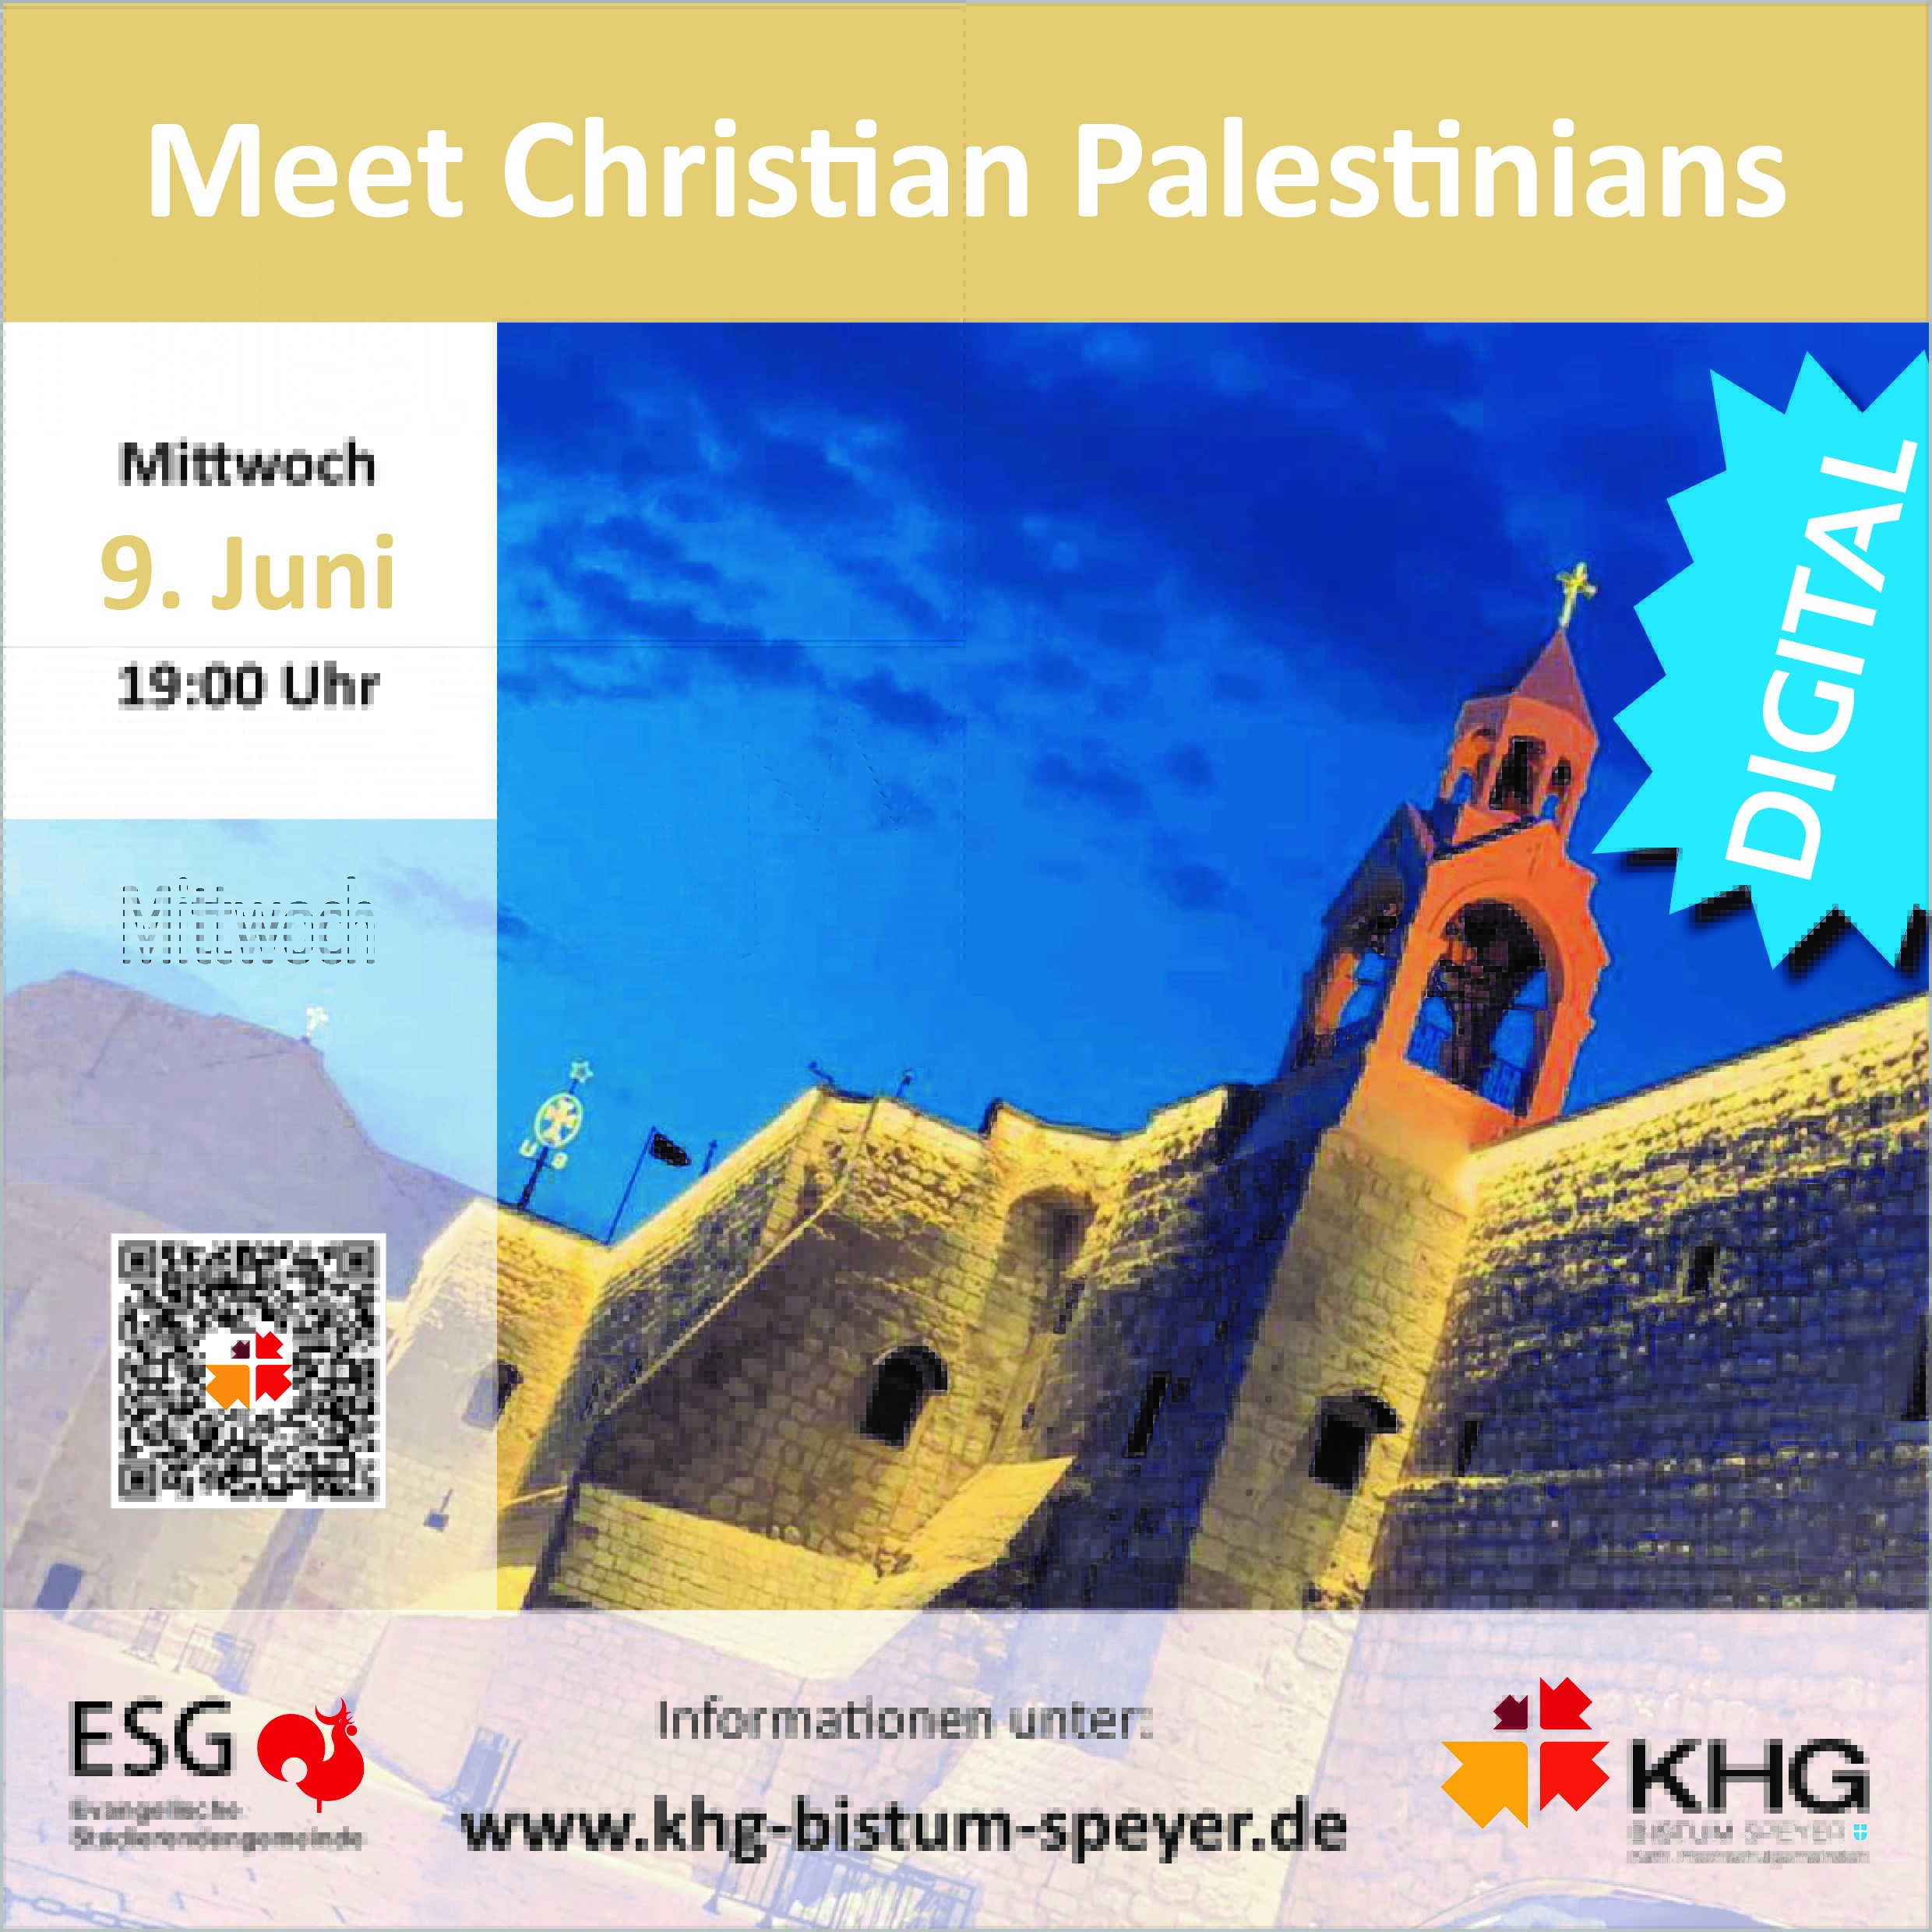 Meet Christian Palestinians